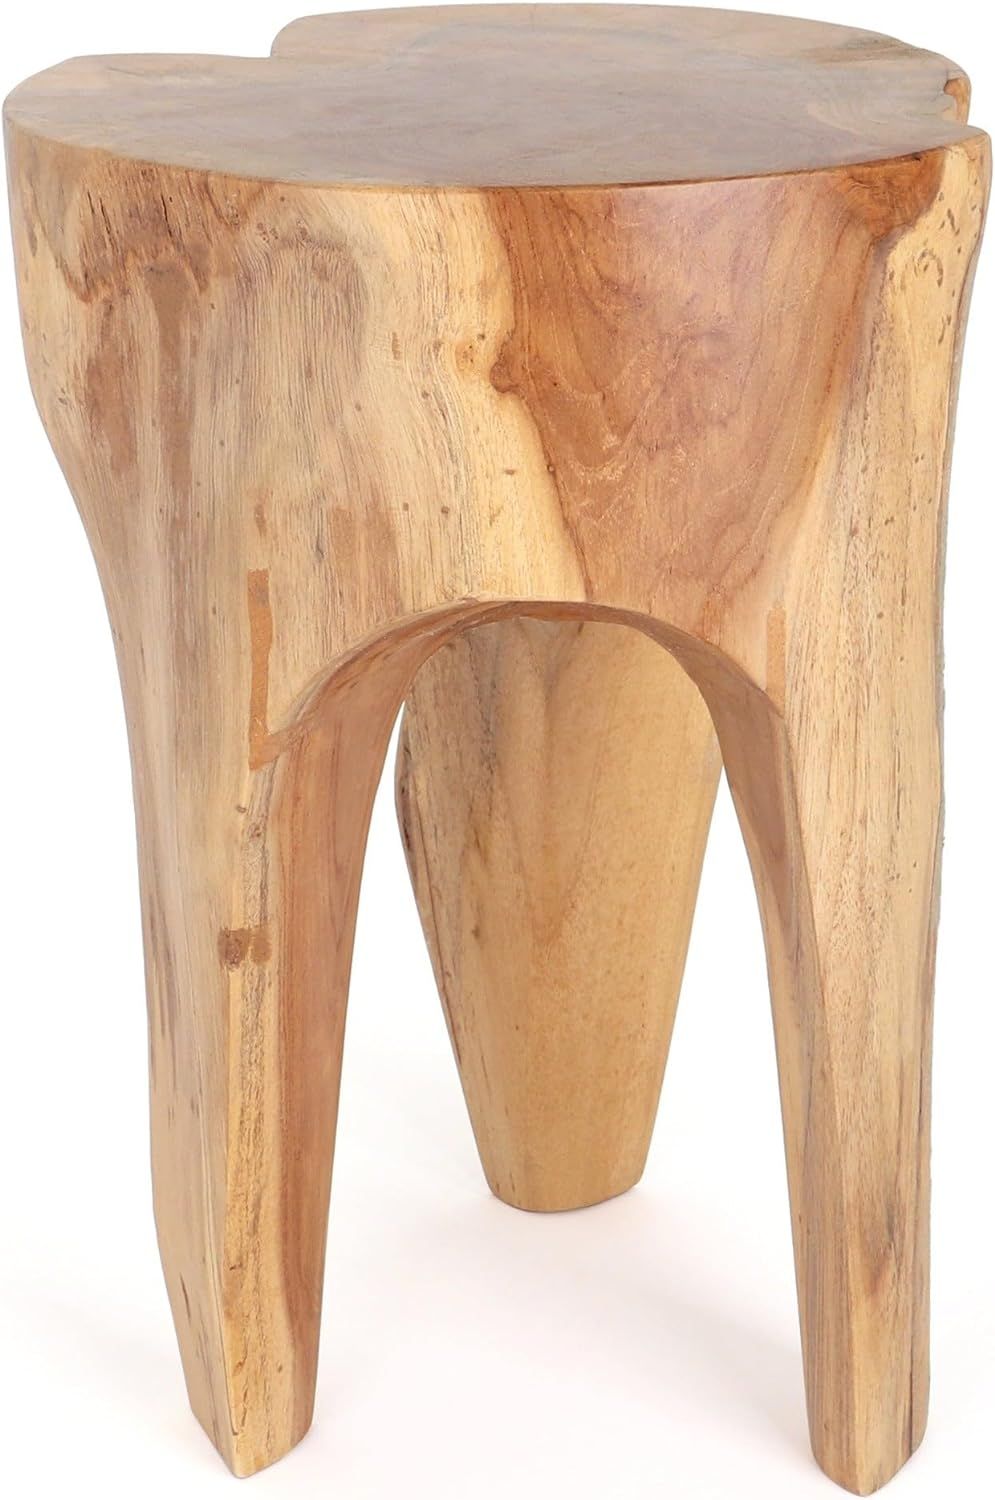 Rutledge & King Java Teak Root Stool - Wooden Stool - Teak Boho Side Table - Teak Accent Table - ... | Amazon (US)